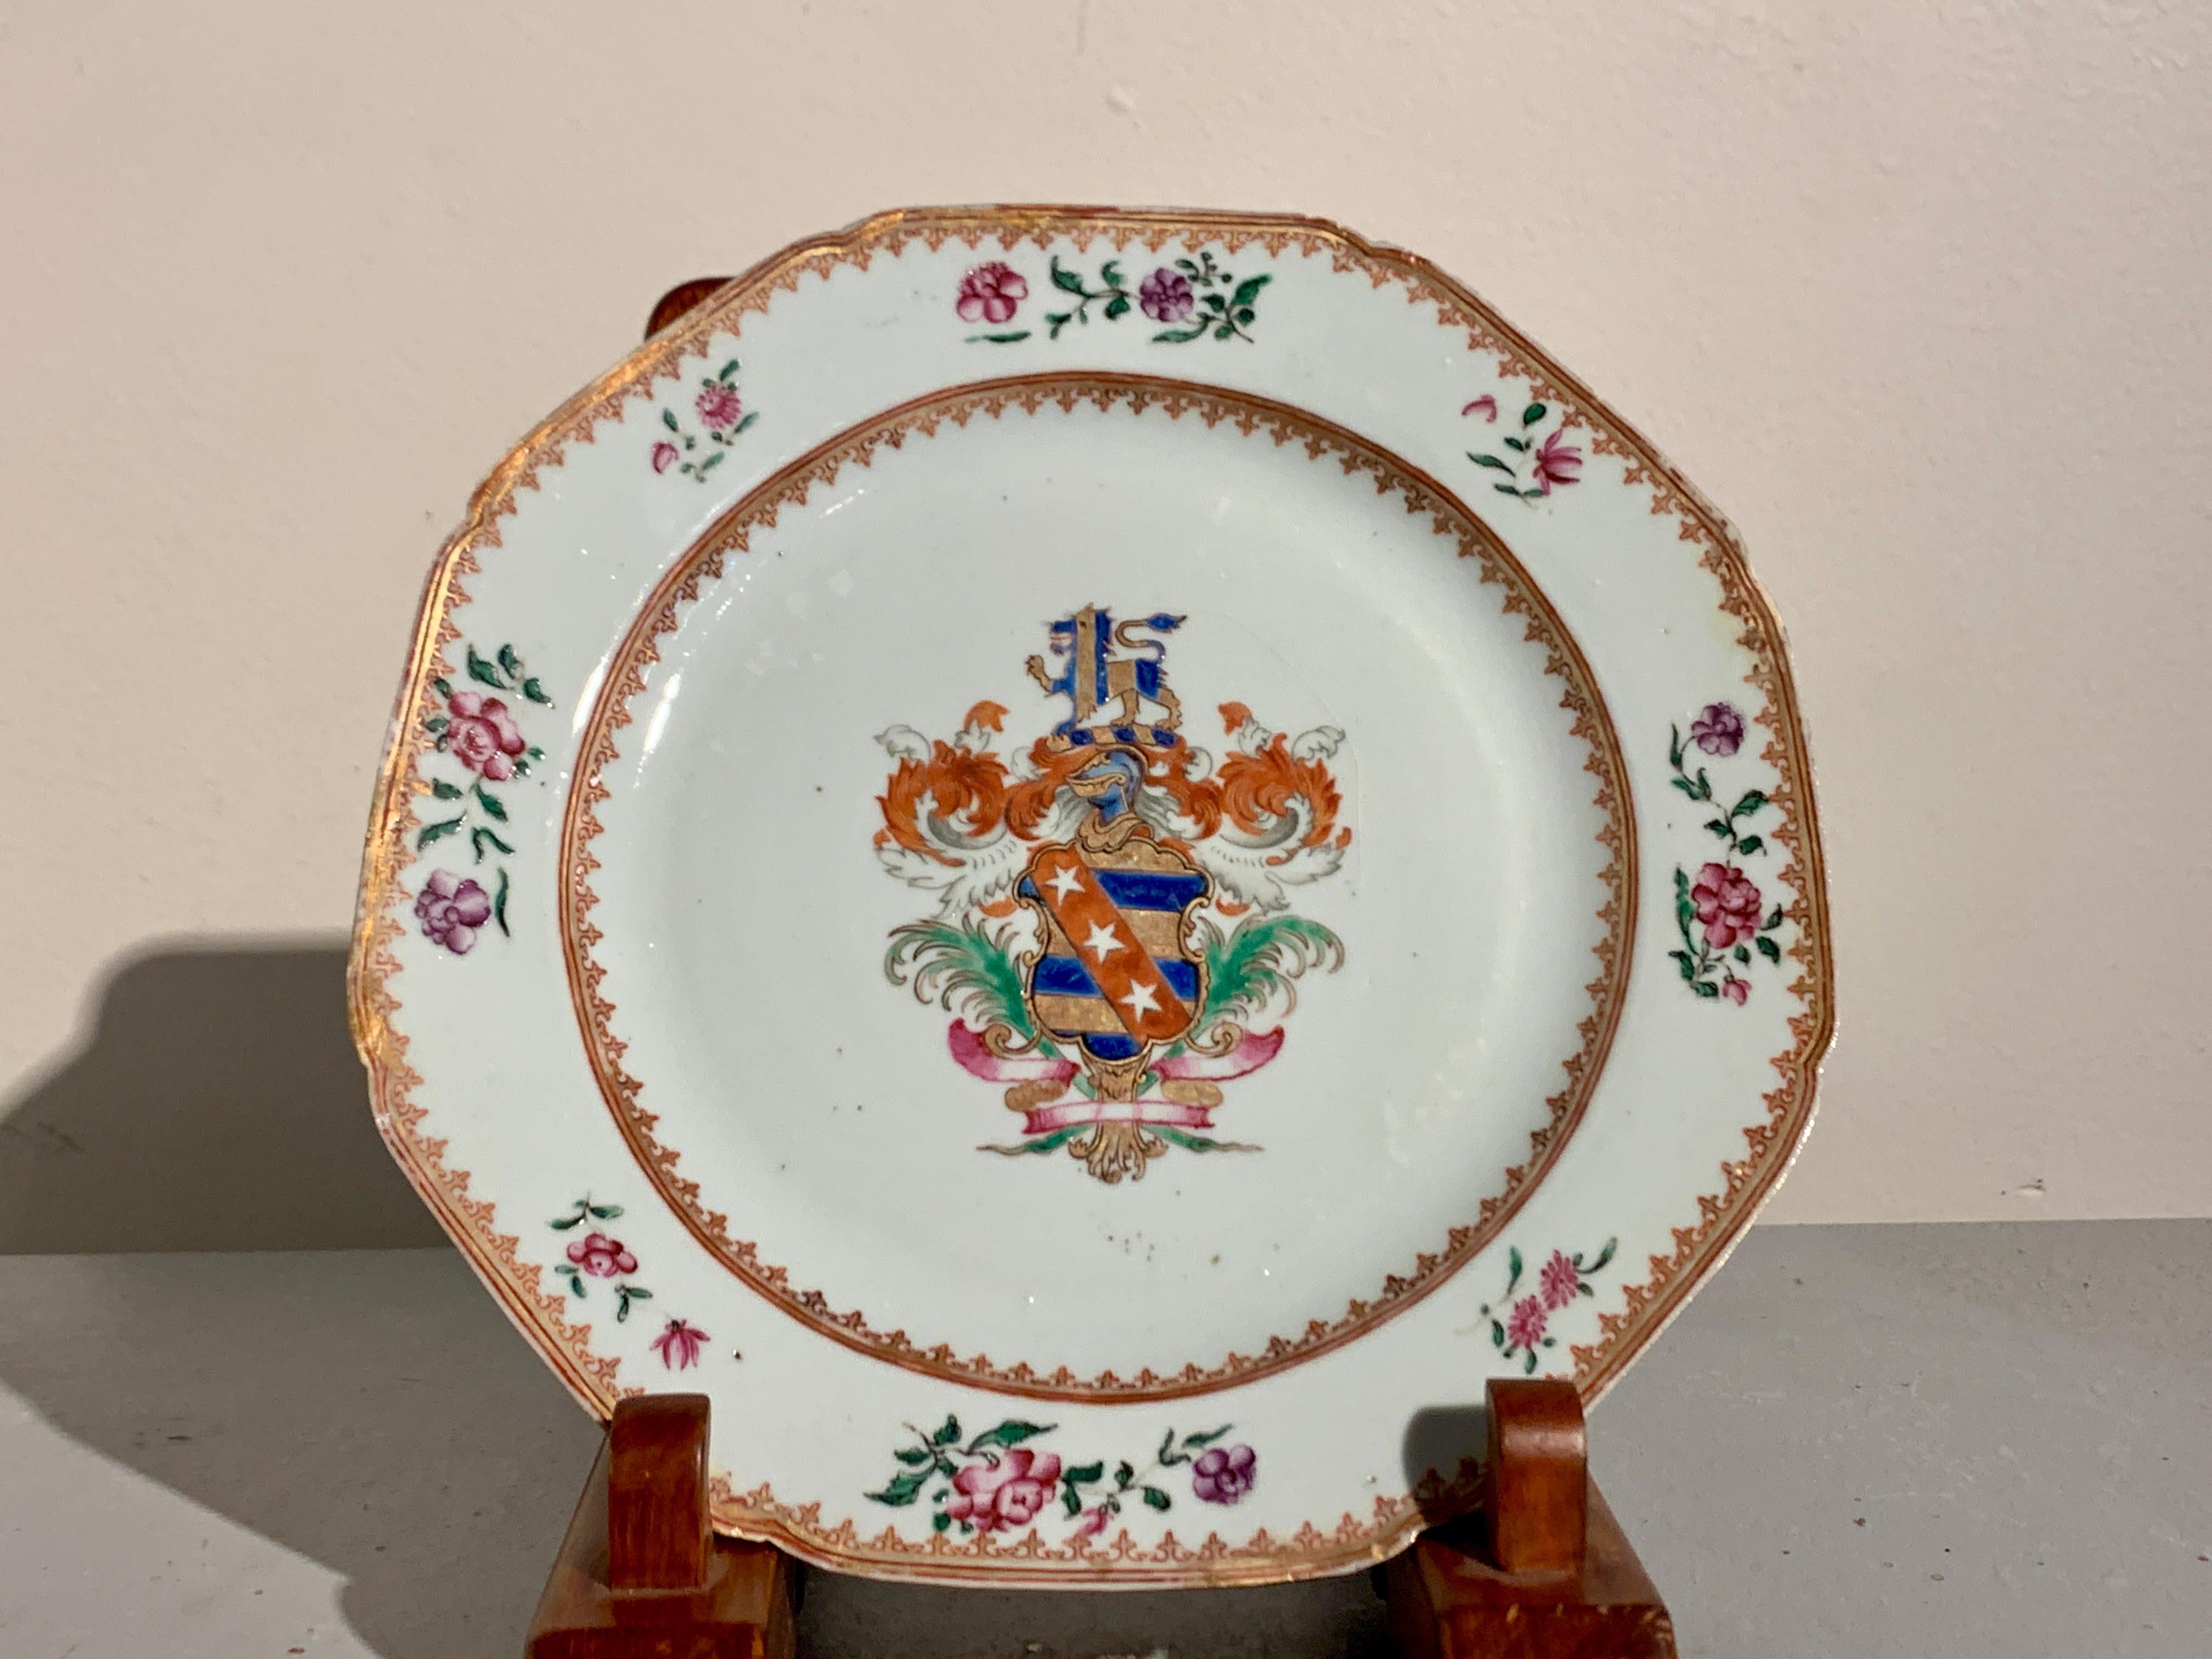 Ein schönes Paar chinesischer Export-Wappenteller aus emailliertem Porzellan, Mitte des 18. Jahrhunderts, China.

Die Teller haben eine ungewöhnliche achteckige Form mit gezackten Ecken. Die Mitte jedes Tellers ist mit einem großen, dem Wappen von